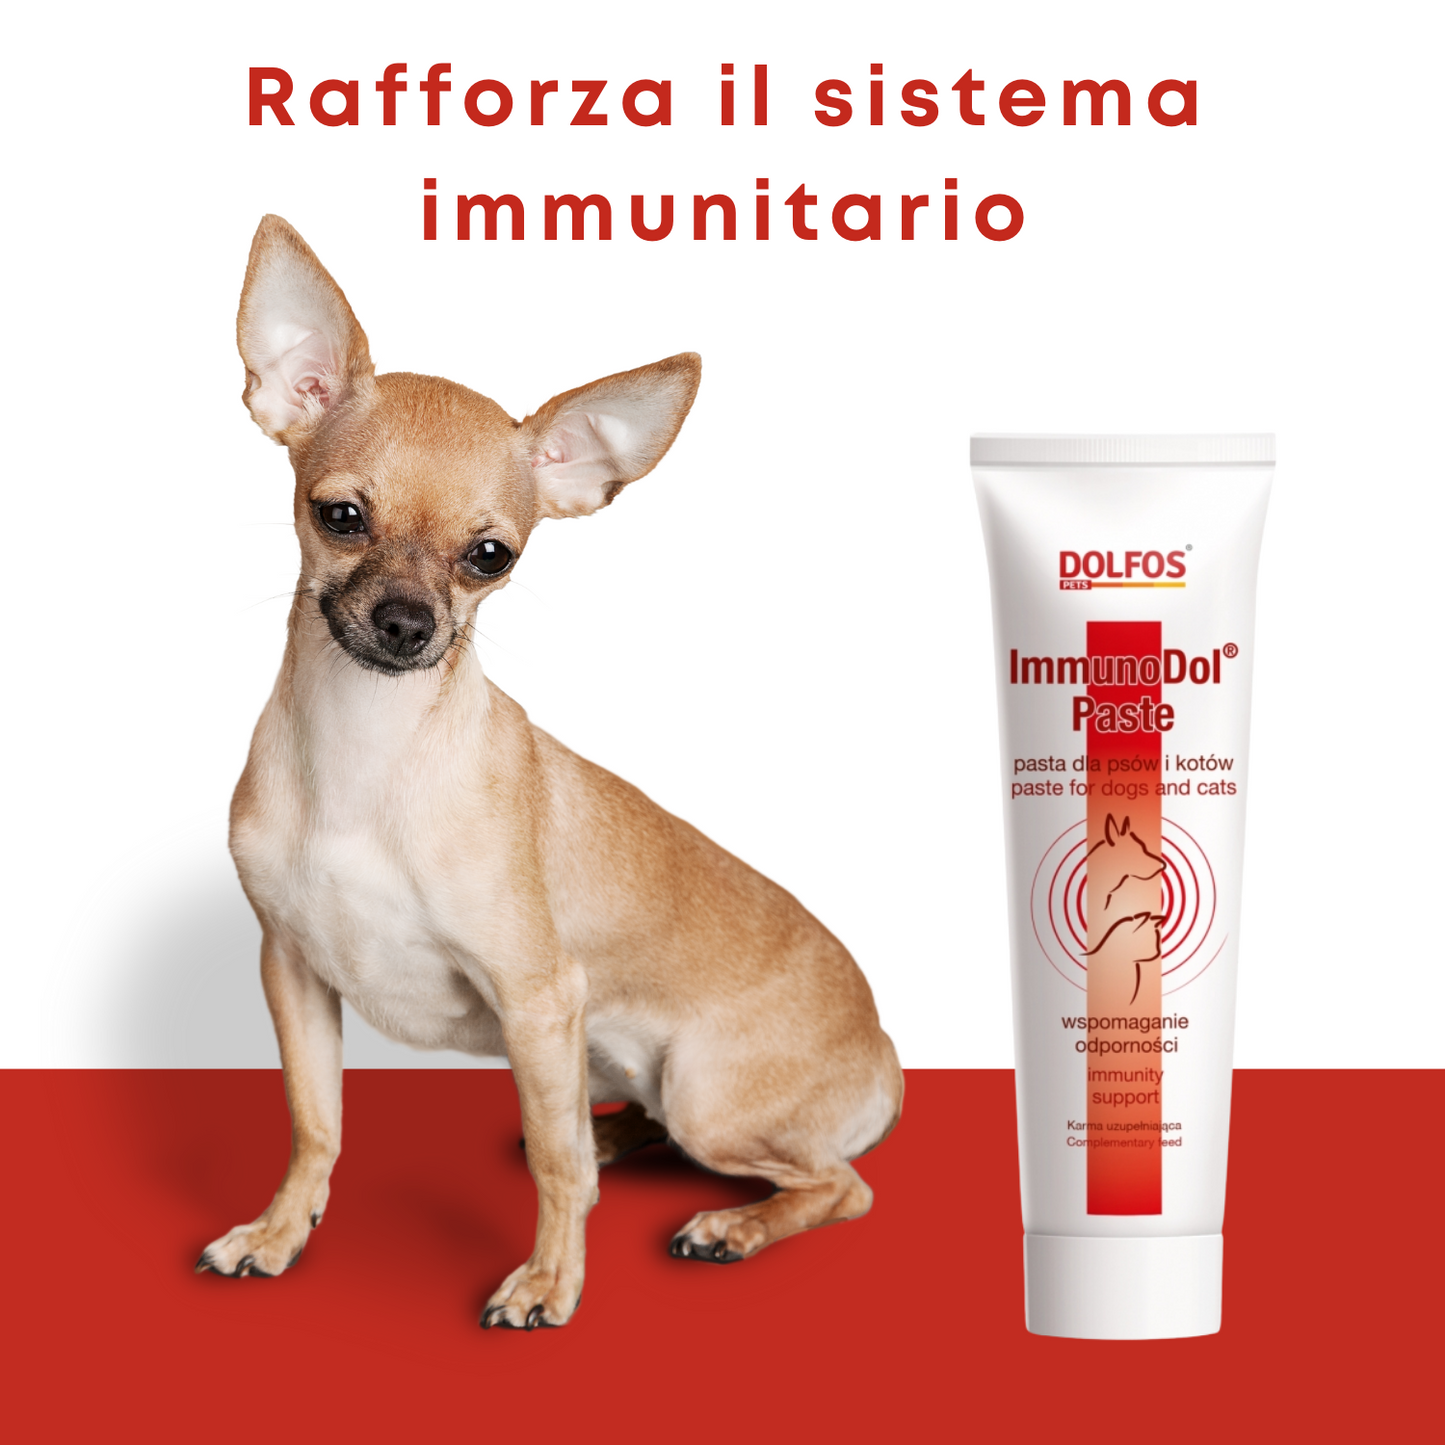 ImmunoDol Paste 100 "... rinforza il sistema immunitario .."